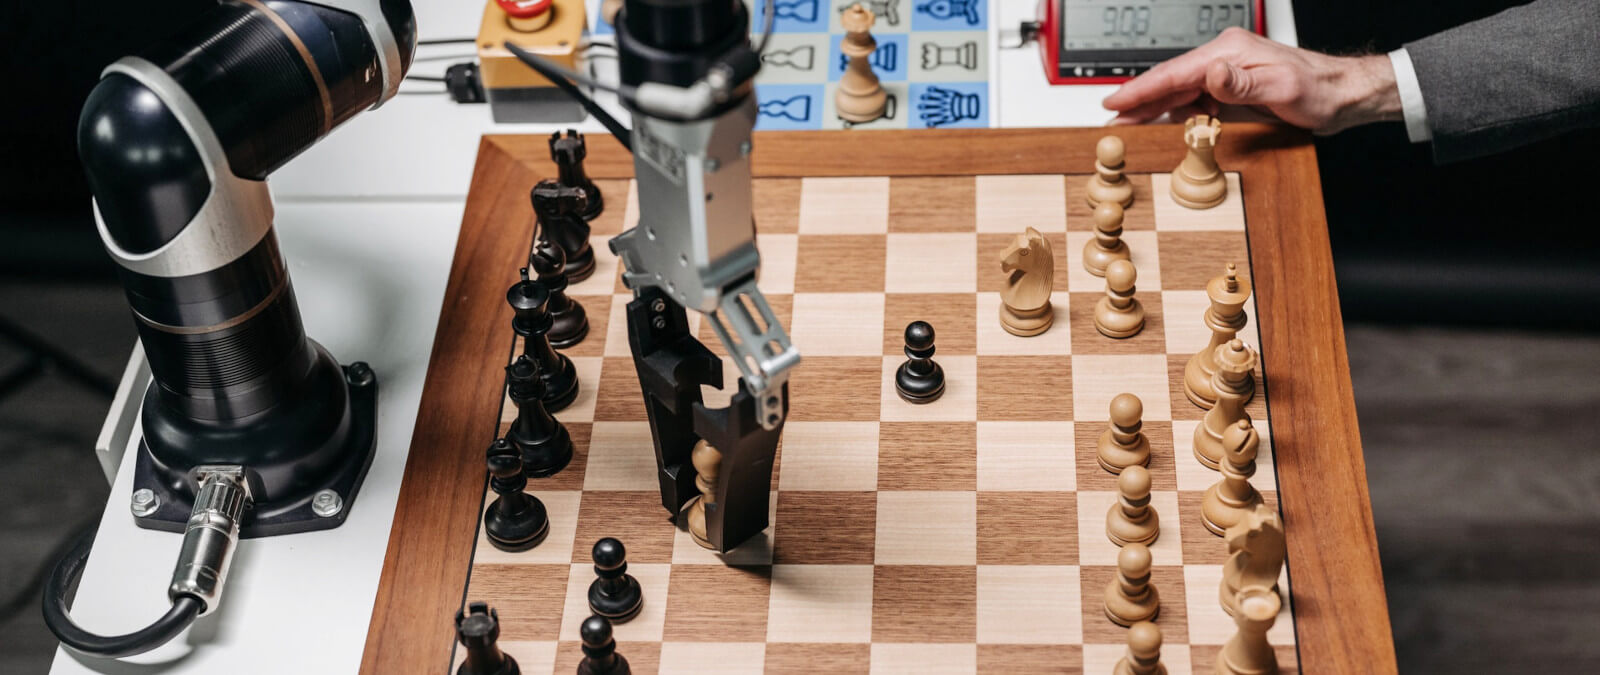 Robo Chess - Juego Online Gratis